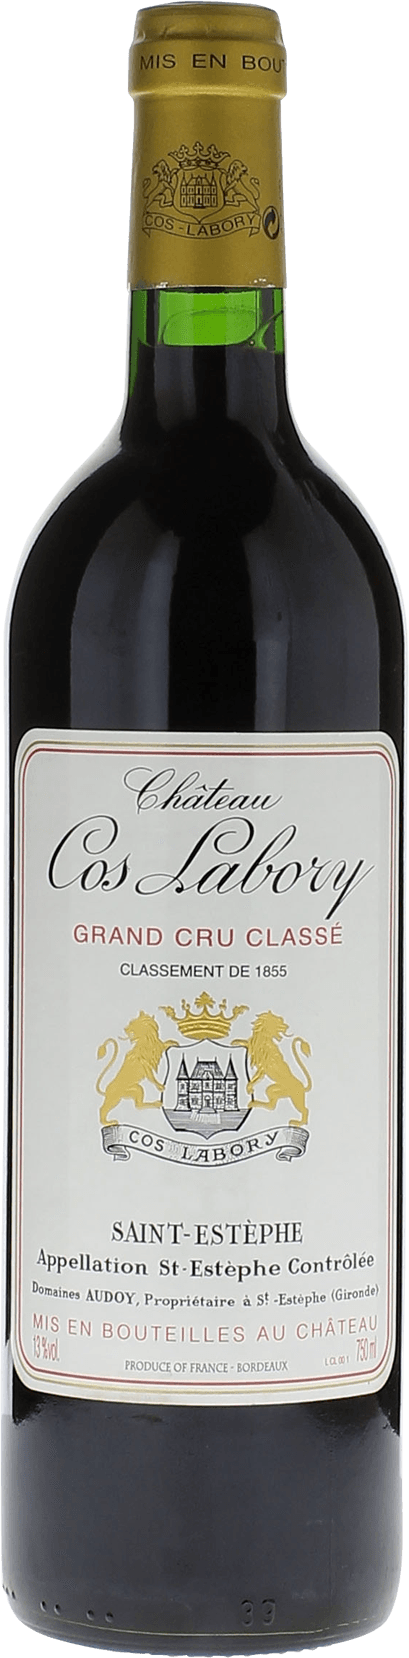 Cos labory 2016 5me Grand cru class Saint-Estphe, Bordeaux rouge